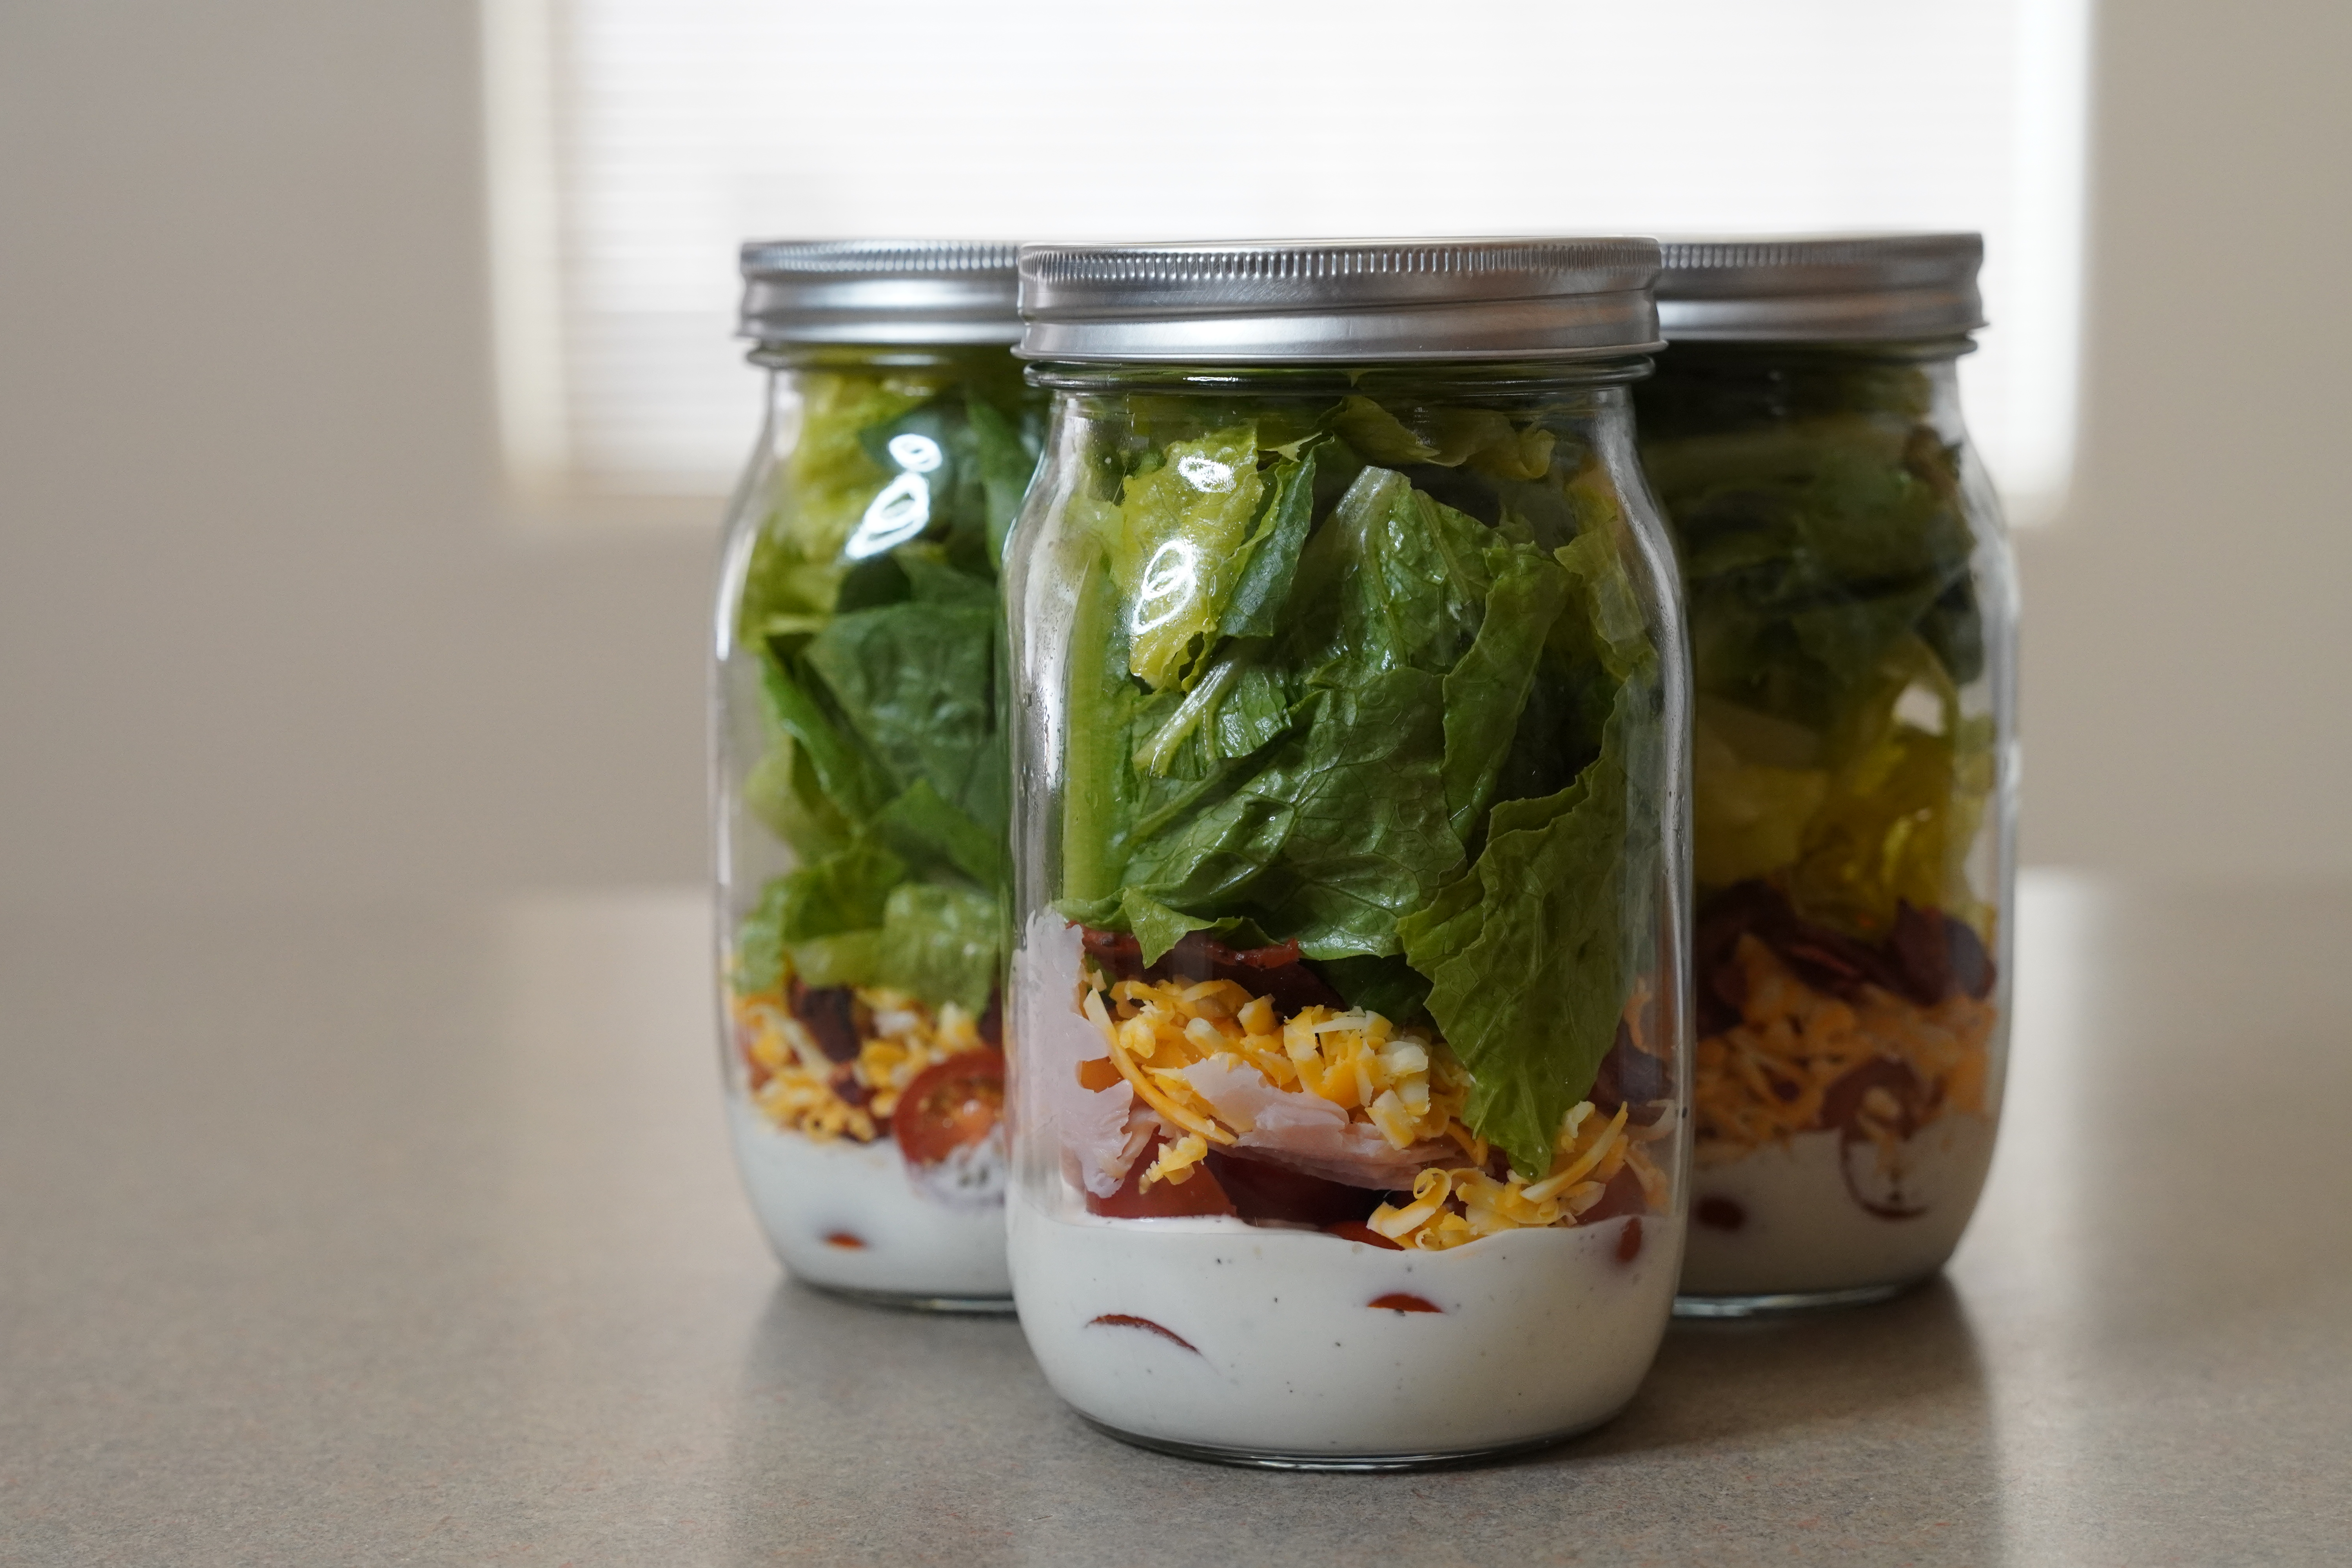 Turkey Club Salad in a Jar